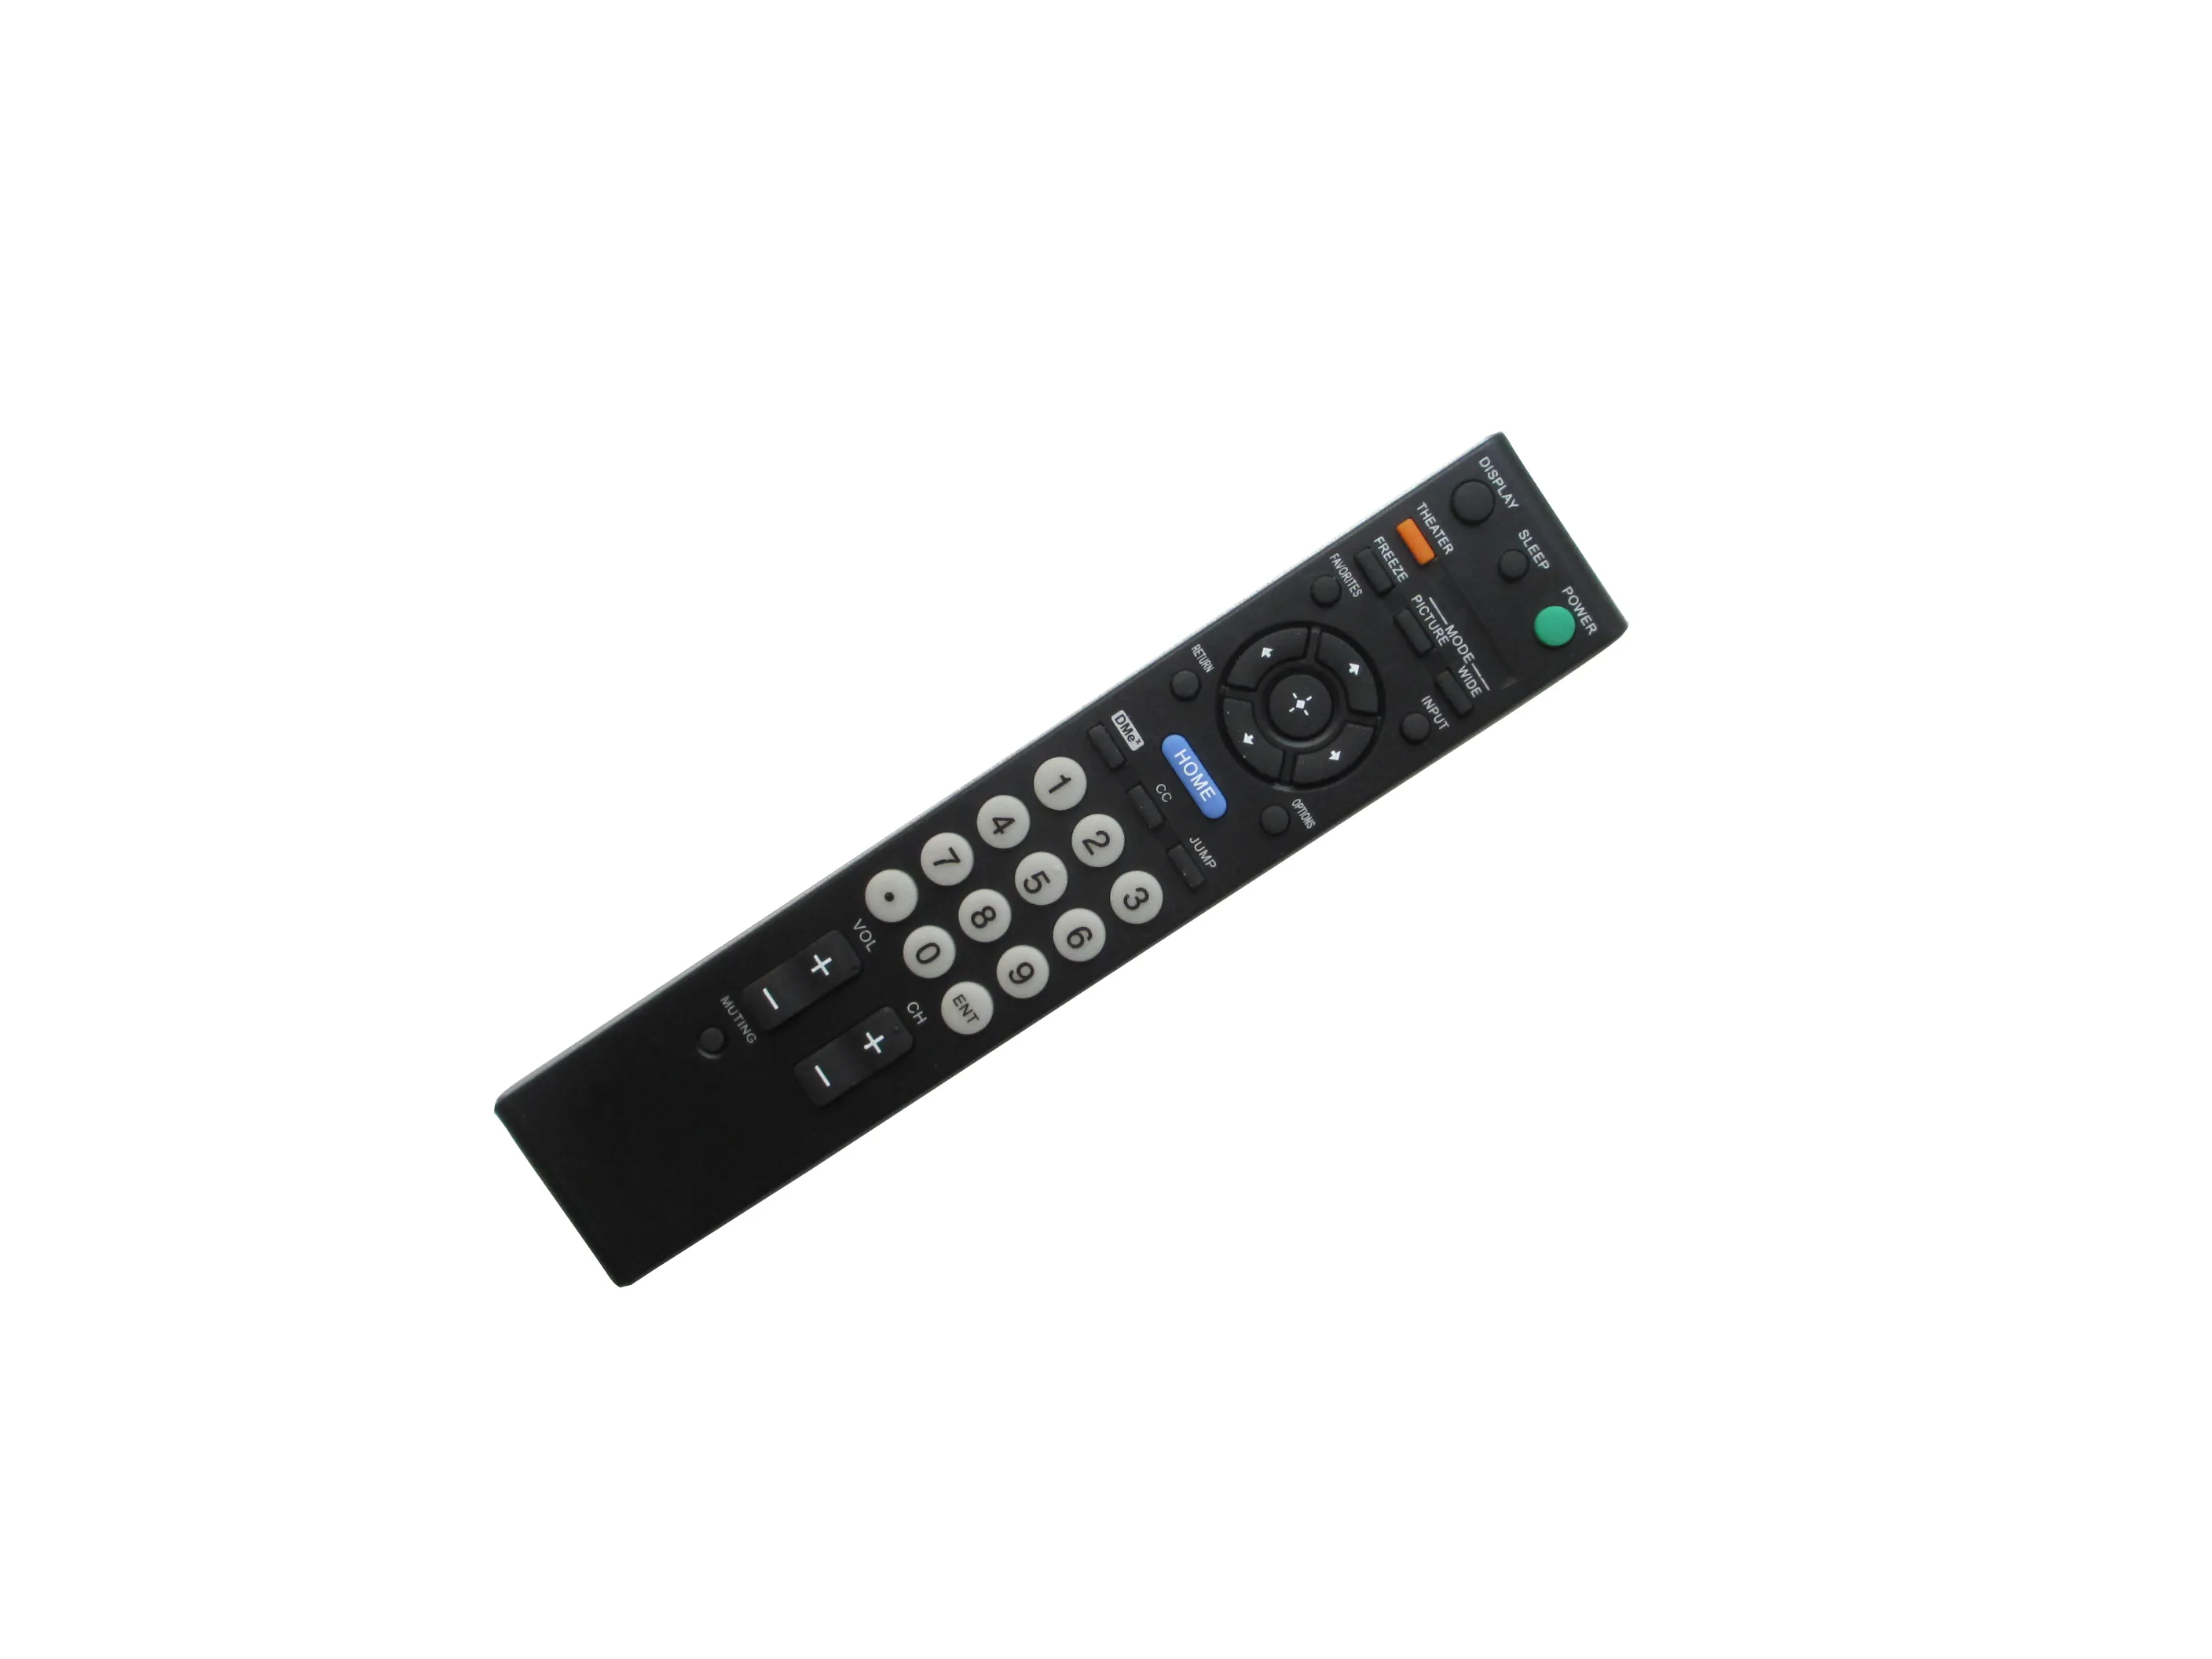 Télécommande Pour Sony KDL-26NL140 KDL-32M4000 KDL-32M4000R KDL-32M4000T KDL-32M4000W KDL-32N4000 KDL-32NL140 KDL-37M4000 KDL-37N4000 KDL-37NL140 LCD Bravia TVHD